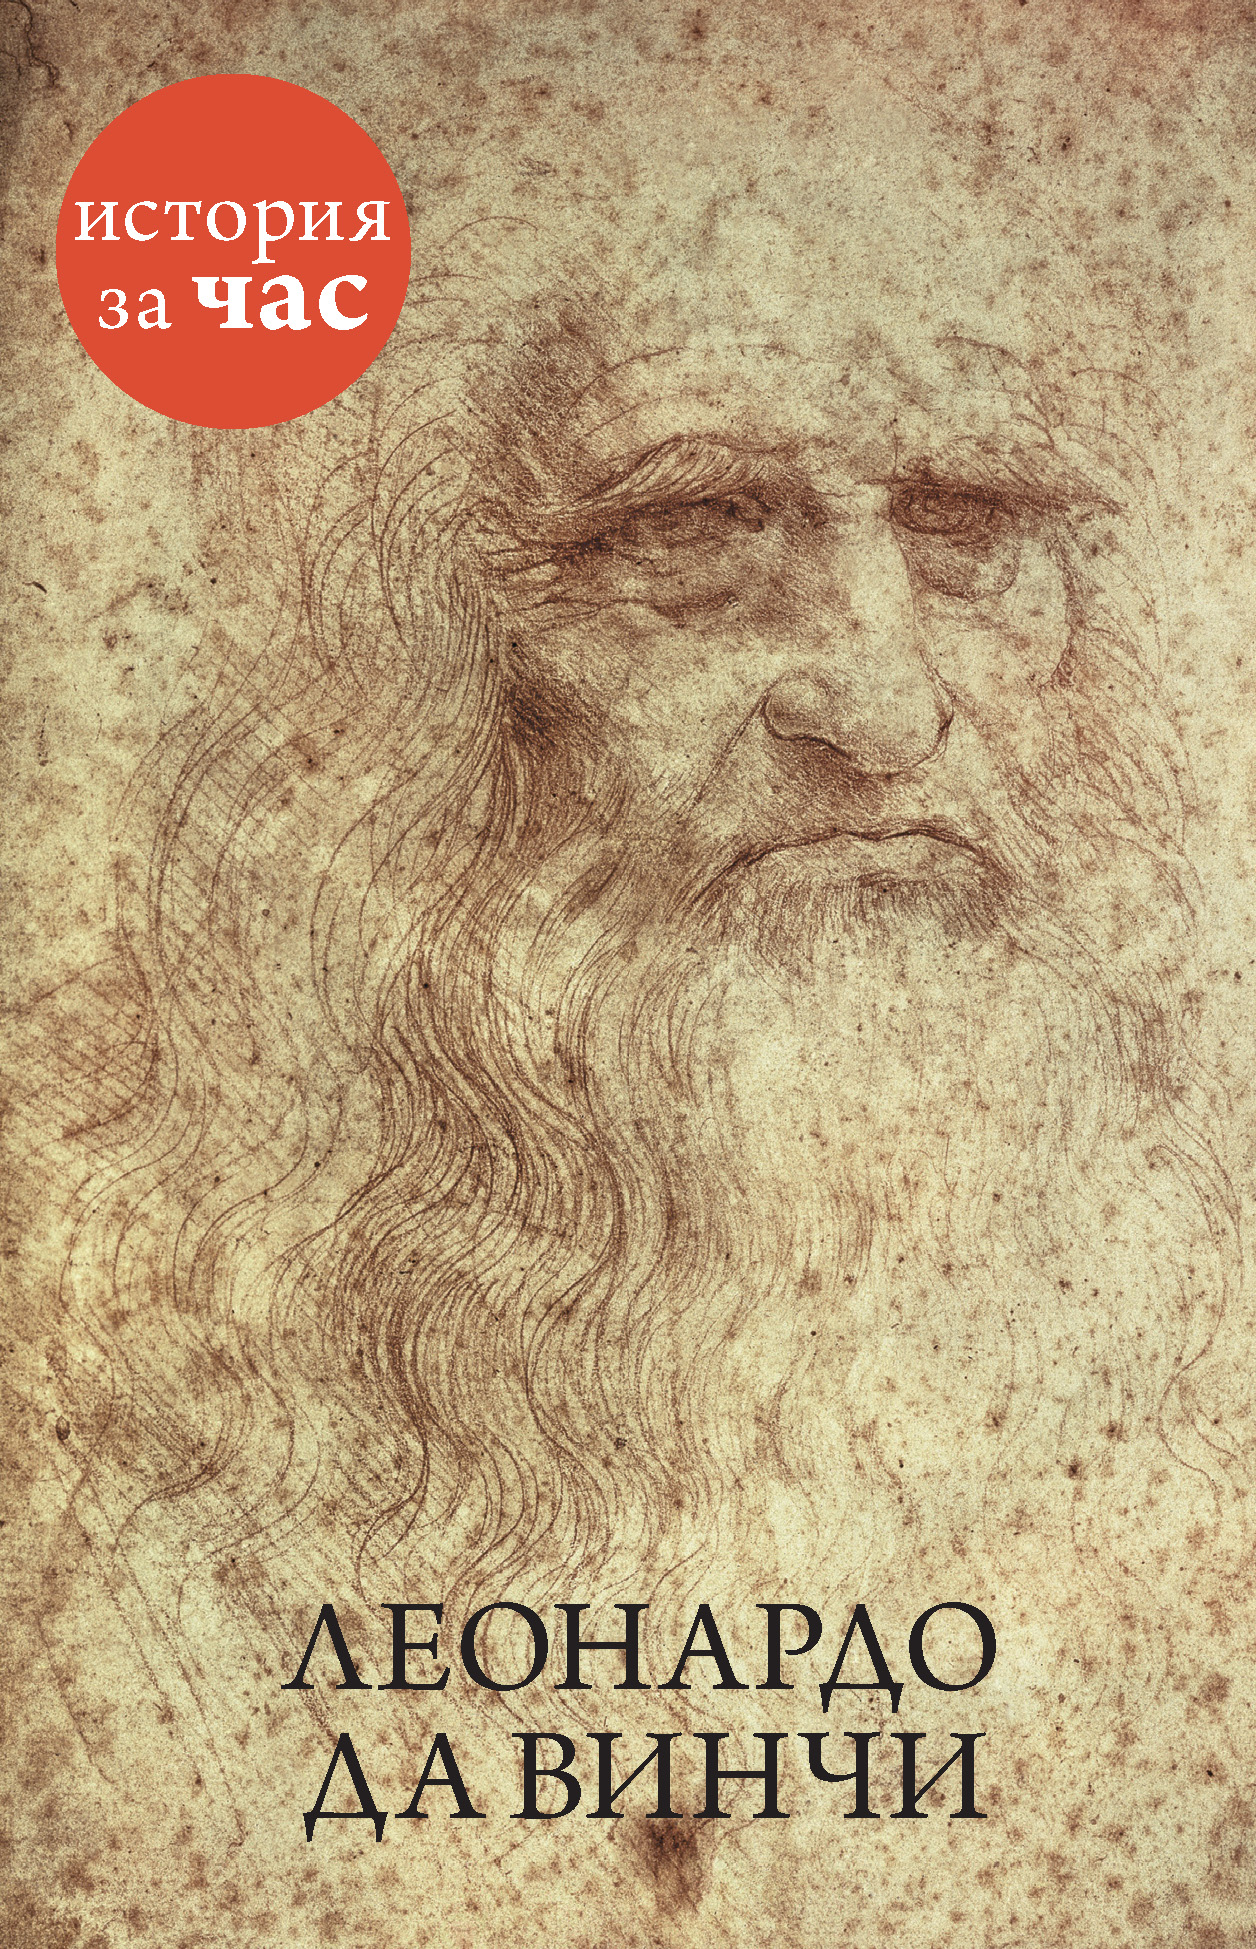 Книга Леонардо да Винчи из серии , созданная Вера Калмыкова, может относится к жанру История, Биографии и Мемуары. Стоимость электронной книги Леонардо да Винчи с идентификатором 9371770 составляет 54.99 руб.